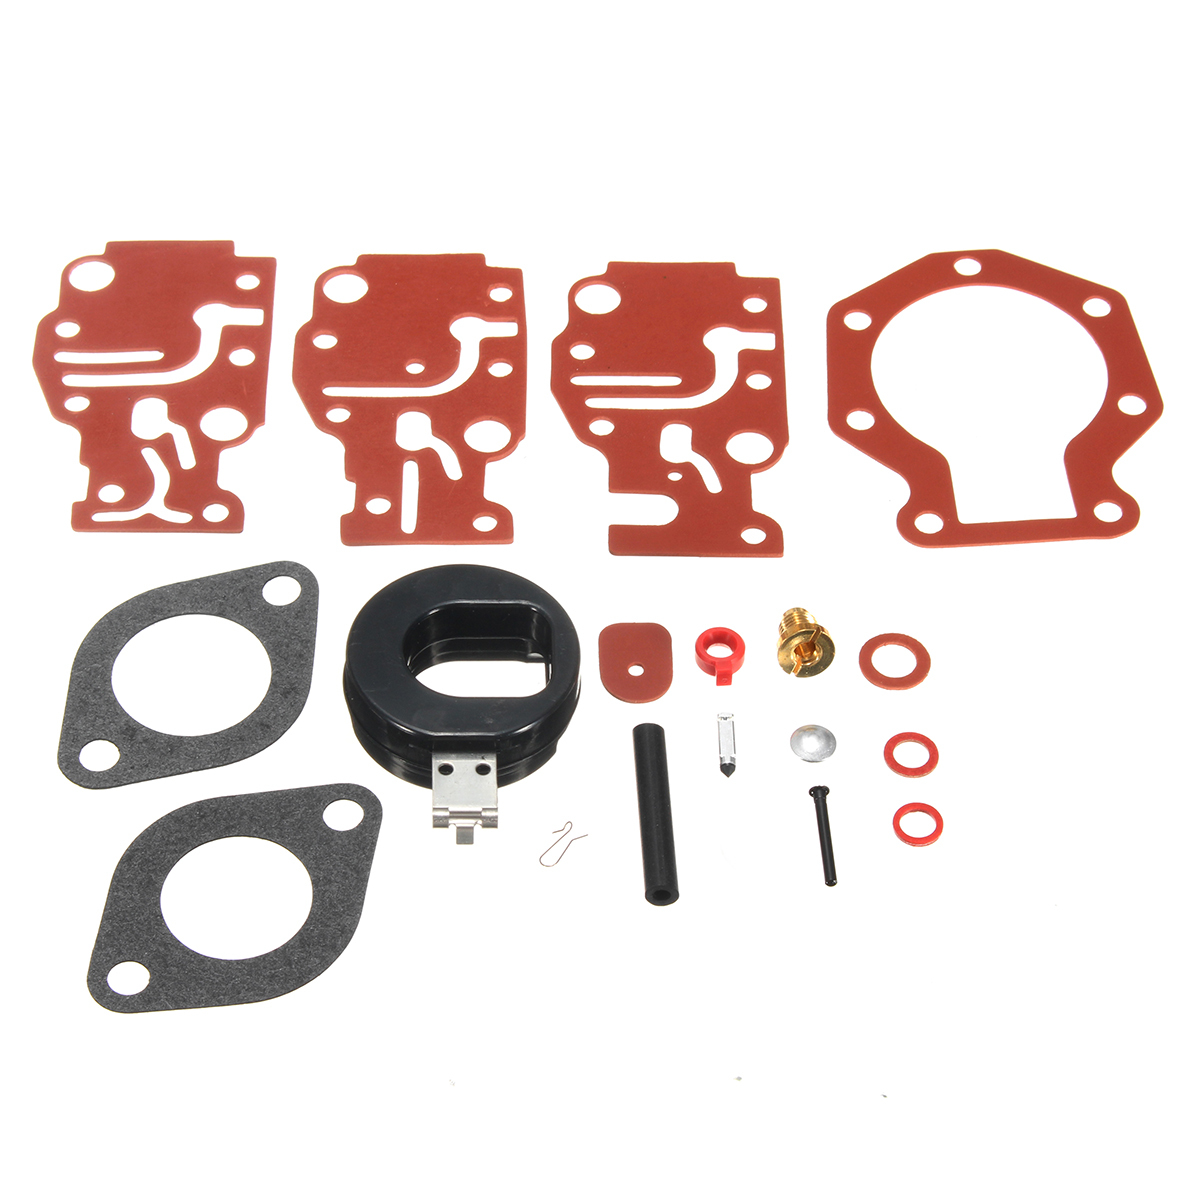 Carburetor Carb Repair Rebuild Tool Kit For Johnson Evinrude 0439073 439073